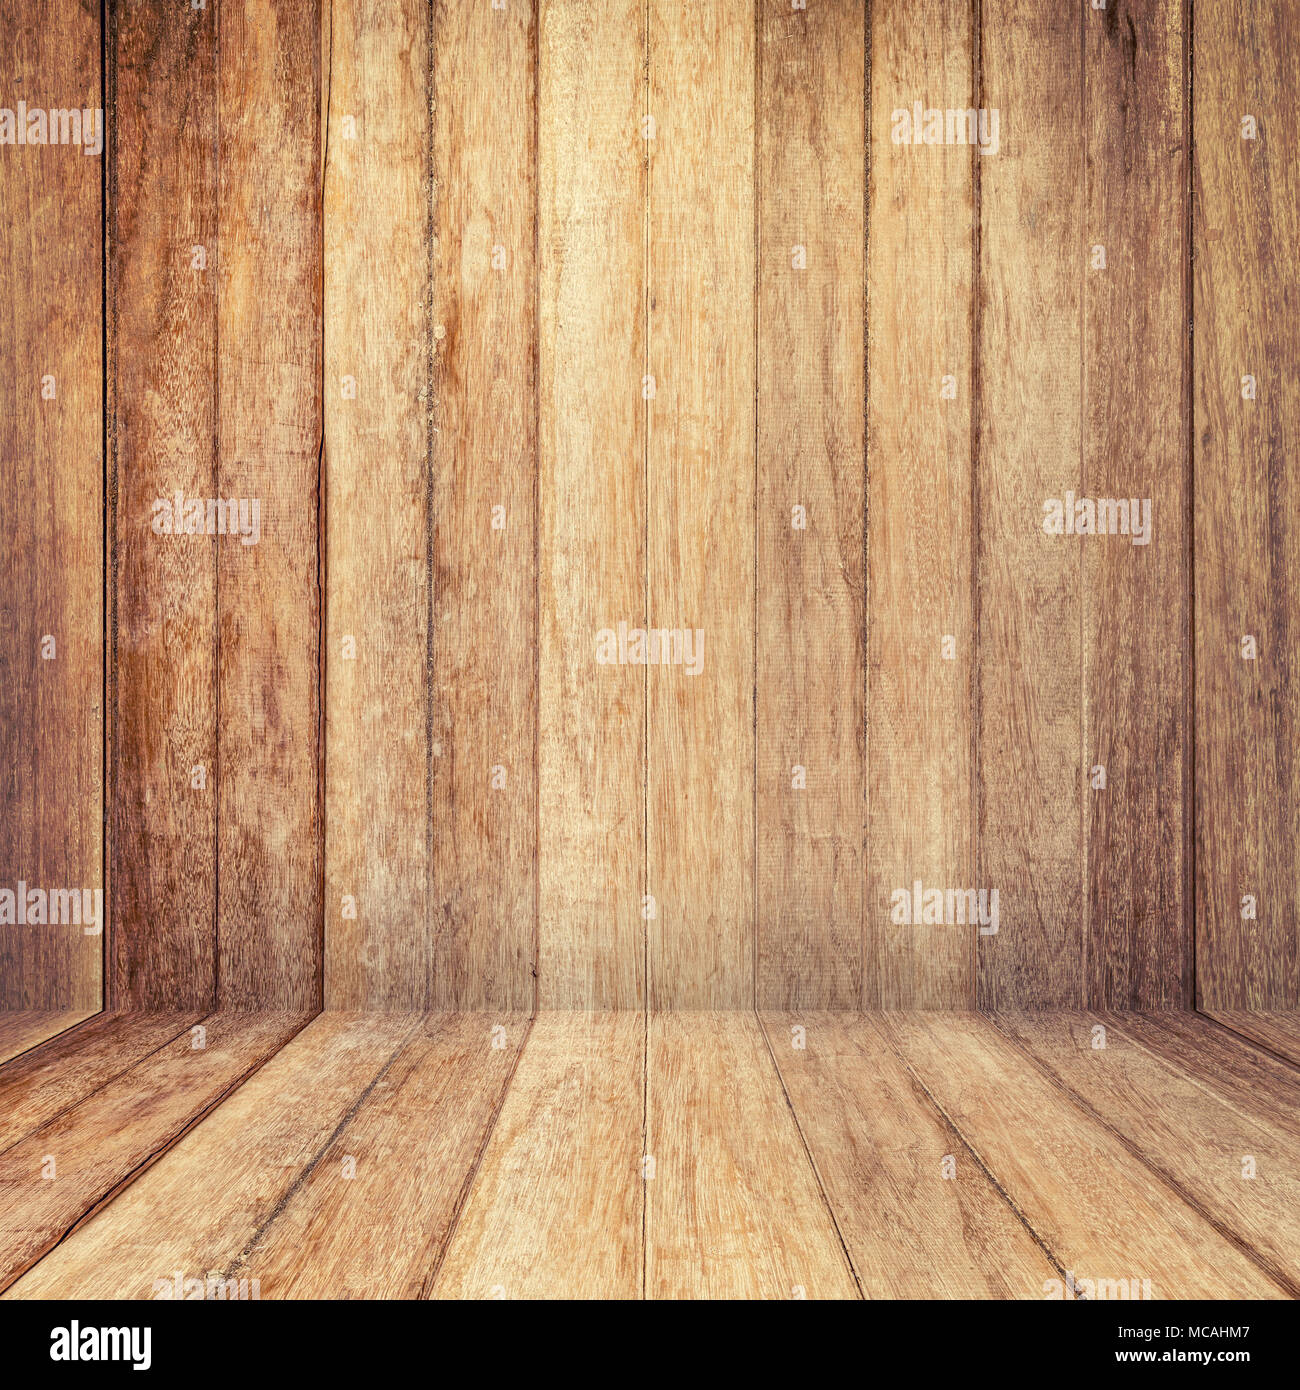 Fondo de textura de madera. la pared y el piso de madera vieja perspectiva de fondo. Foto de stock